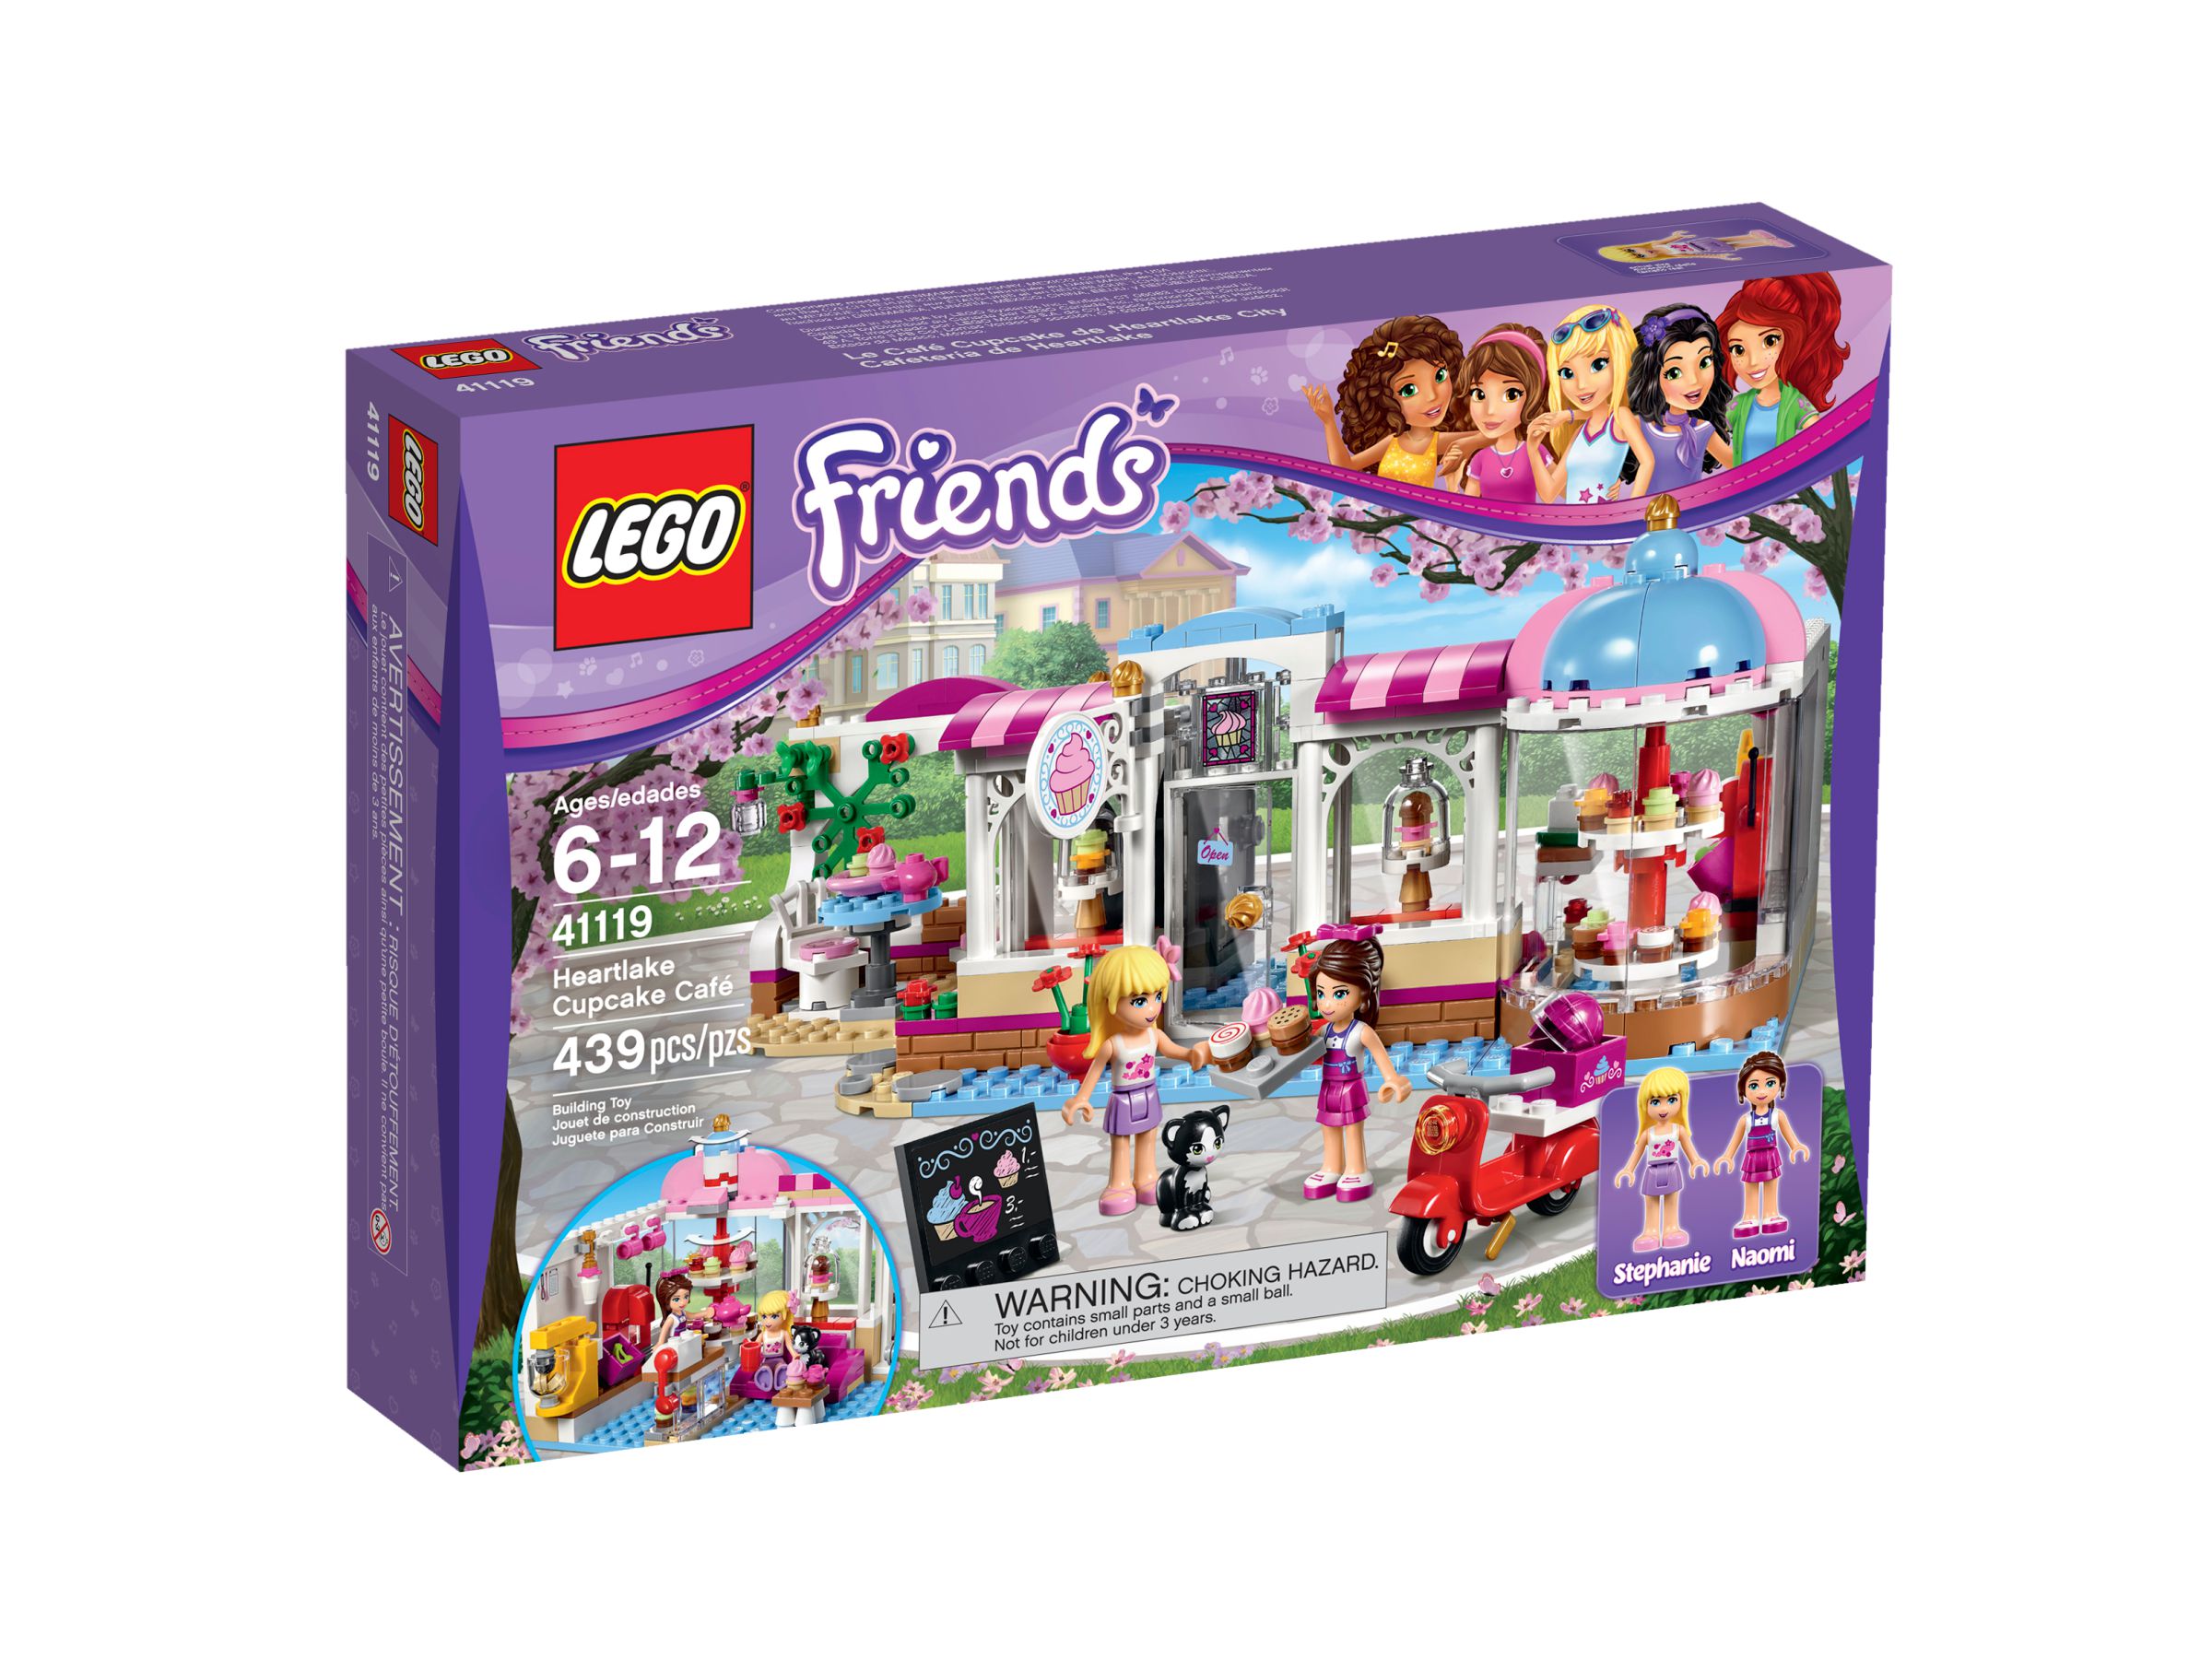 LEGO Friends 41119 Heartlake Cupcake-Café LEGO_41119_alt1.jpg